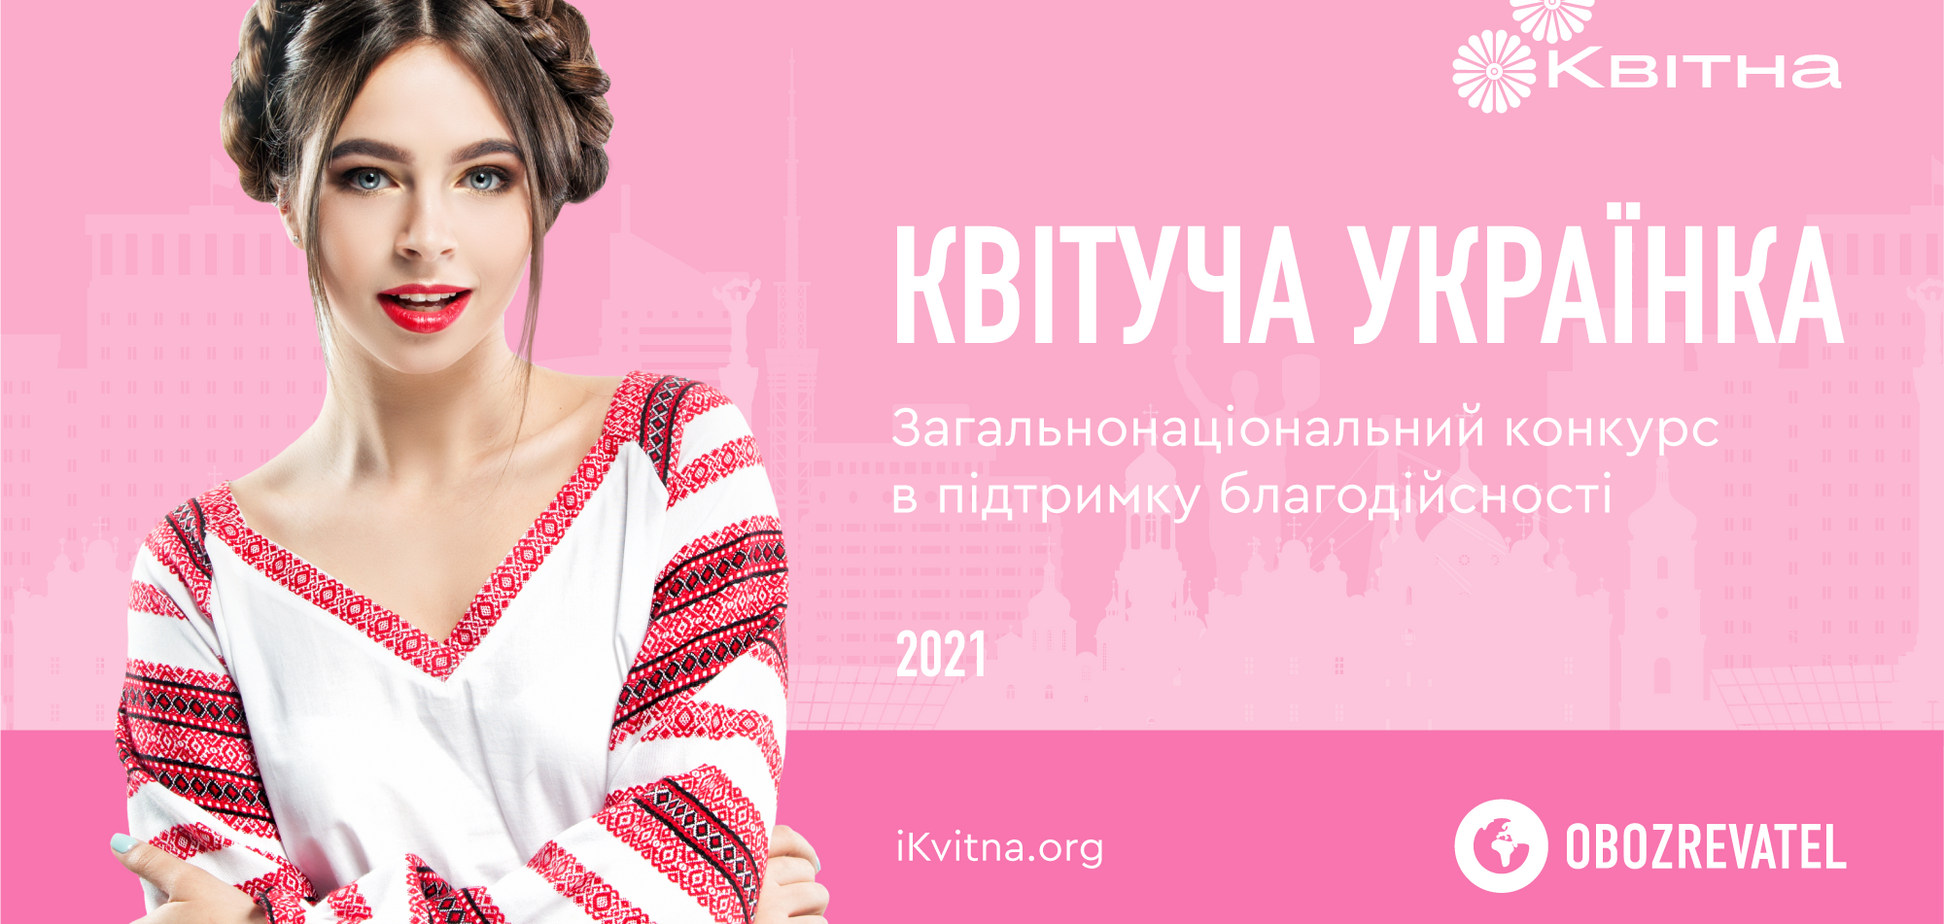 БФ 'Квітна' запустив новий формат конкурсів краси – взяти участь може кожна українка